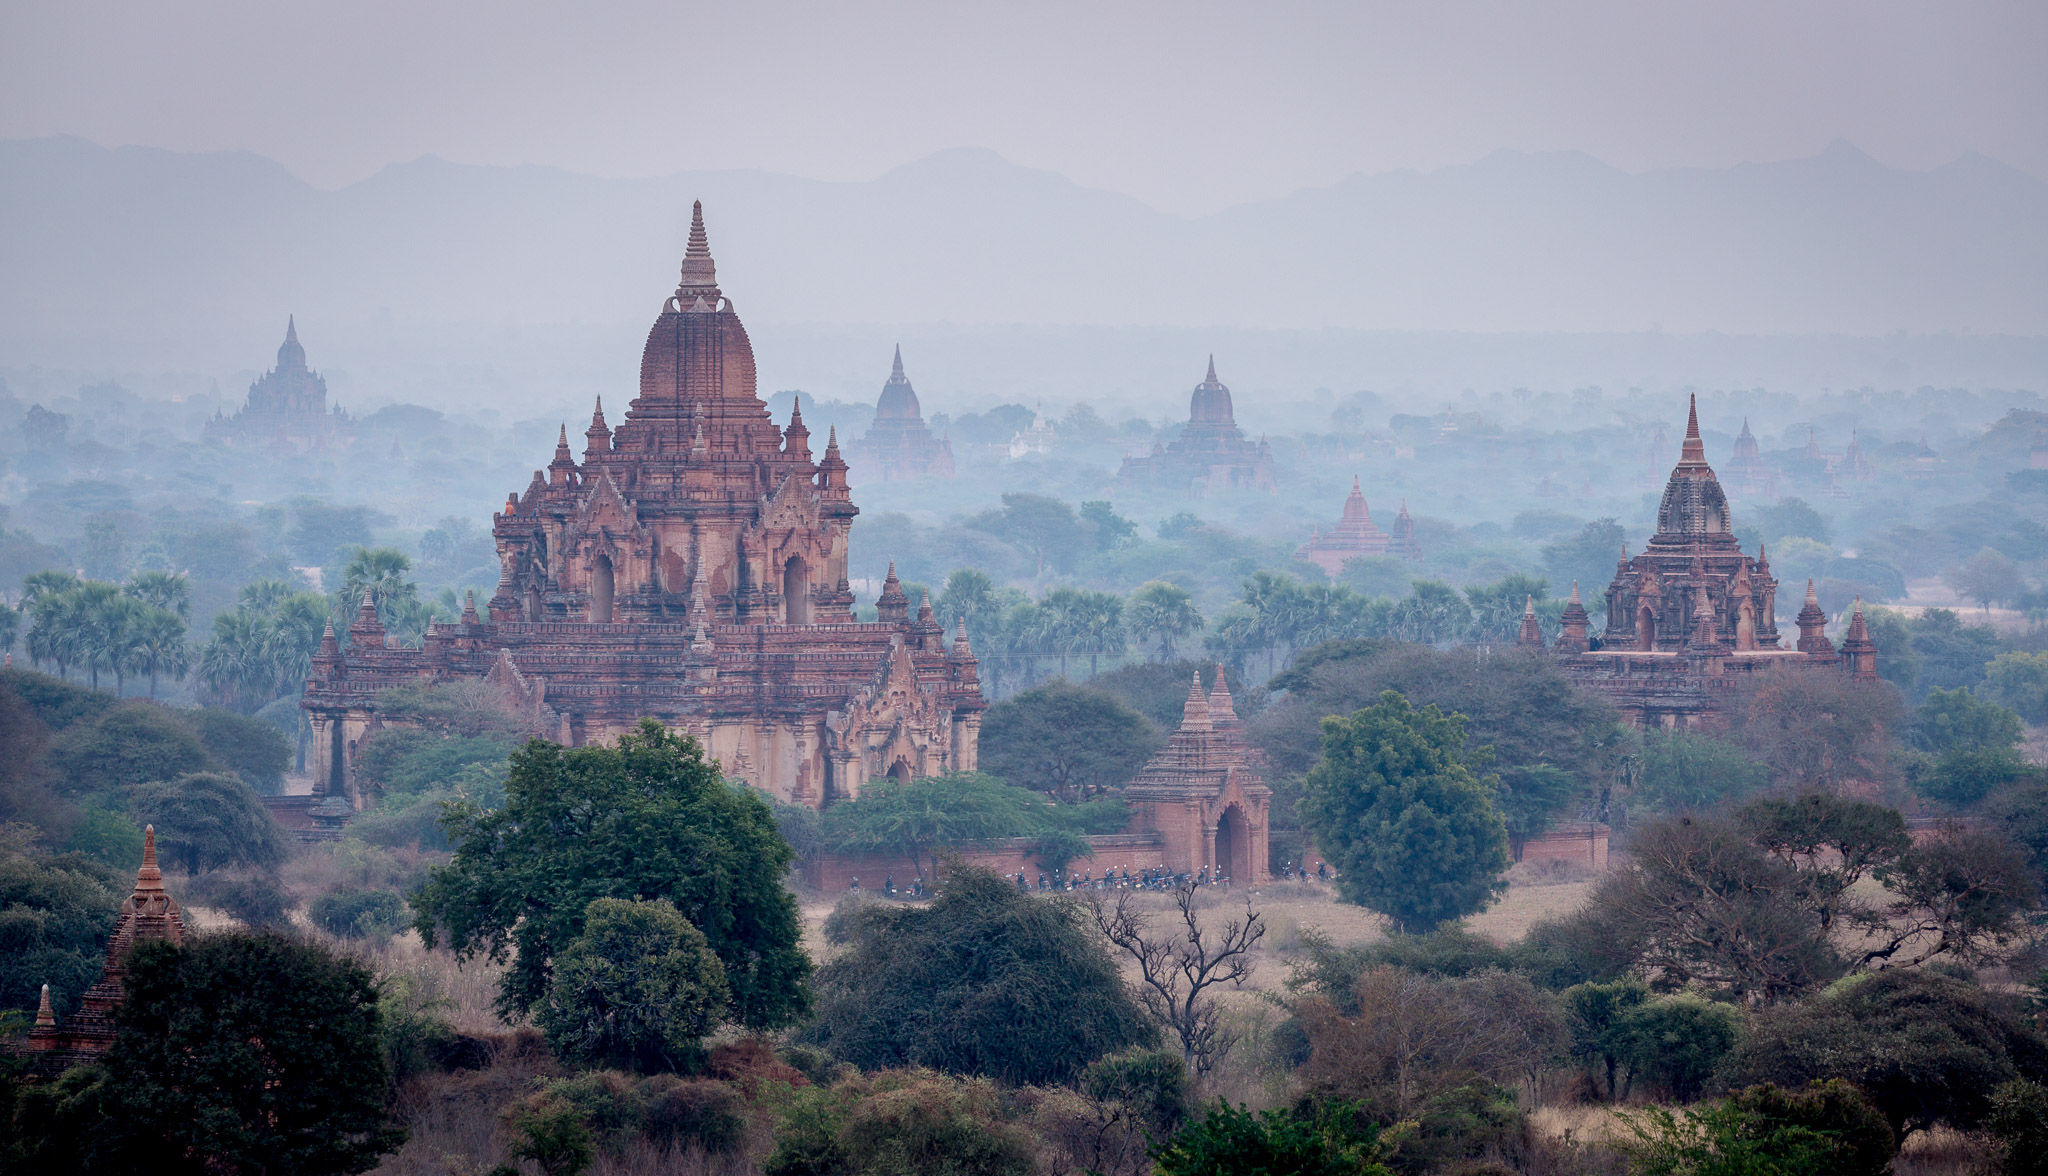 Dawn on the Bagan plain